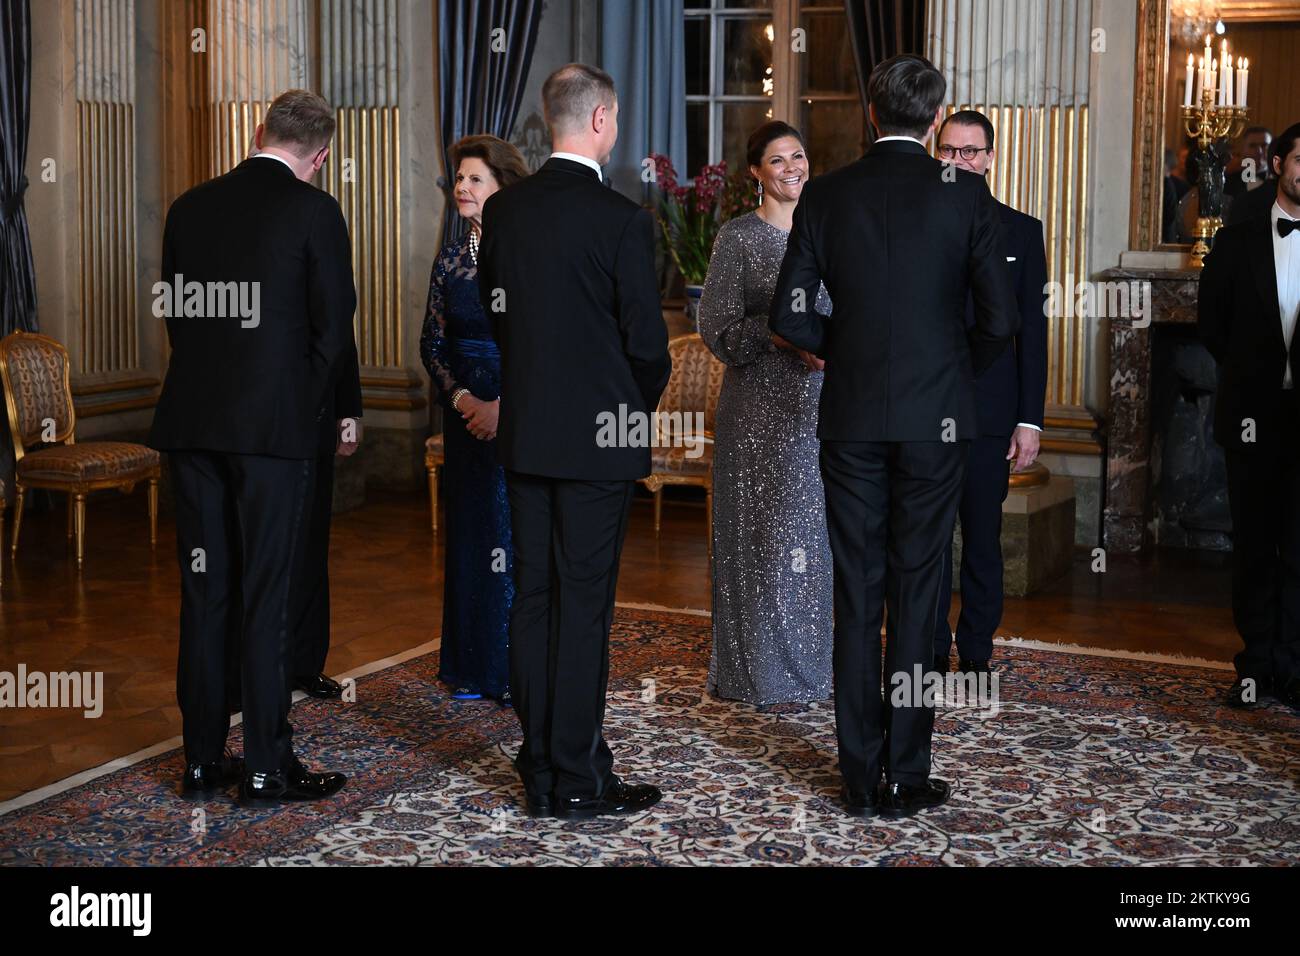 La famiglia reale svedese accoglie i membri del Parlamento svedese durante una cena al Palazzo reale di Stoccolma, in Svezia, il 29 novembre 2022. PH Foto Stock